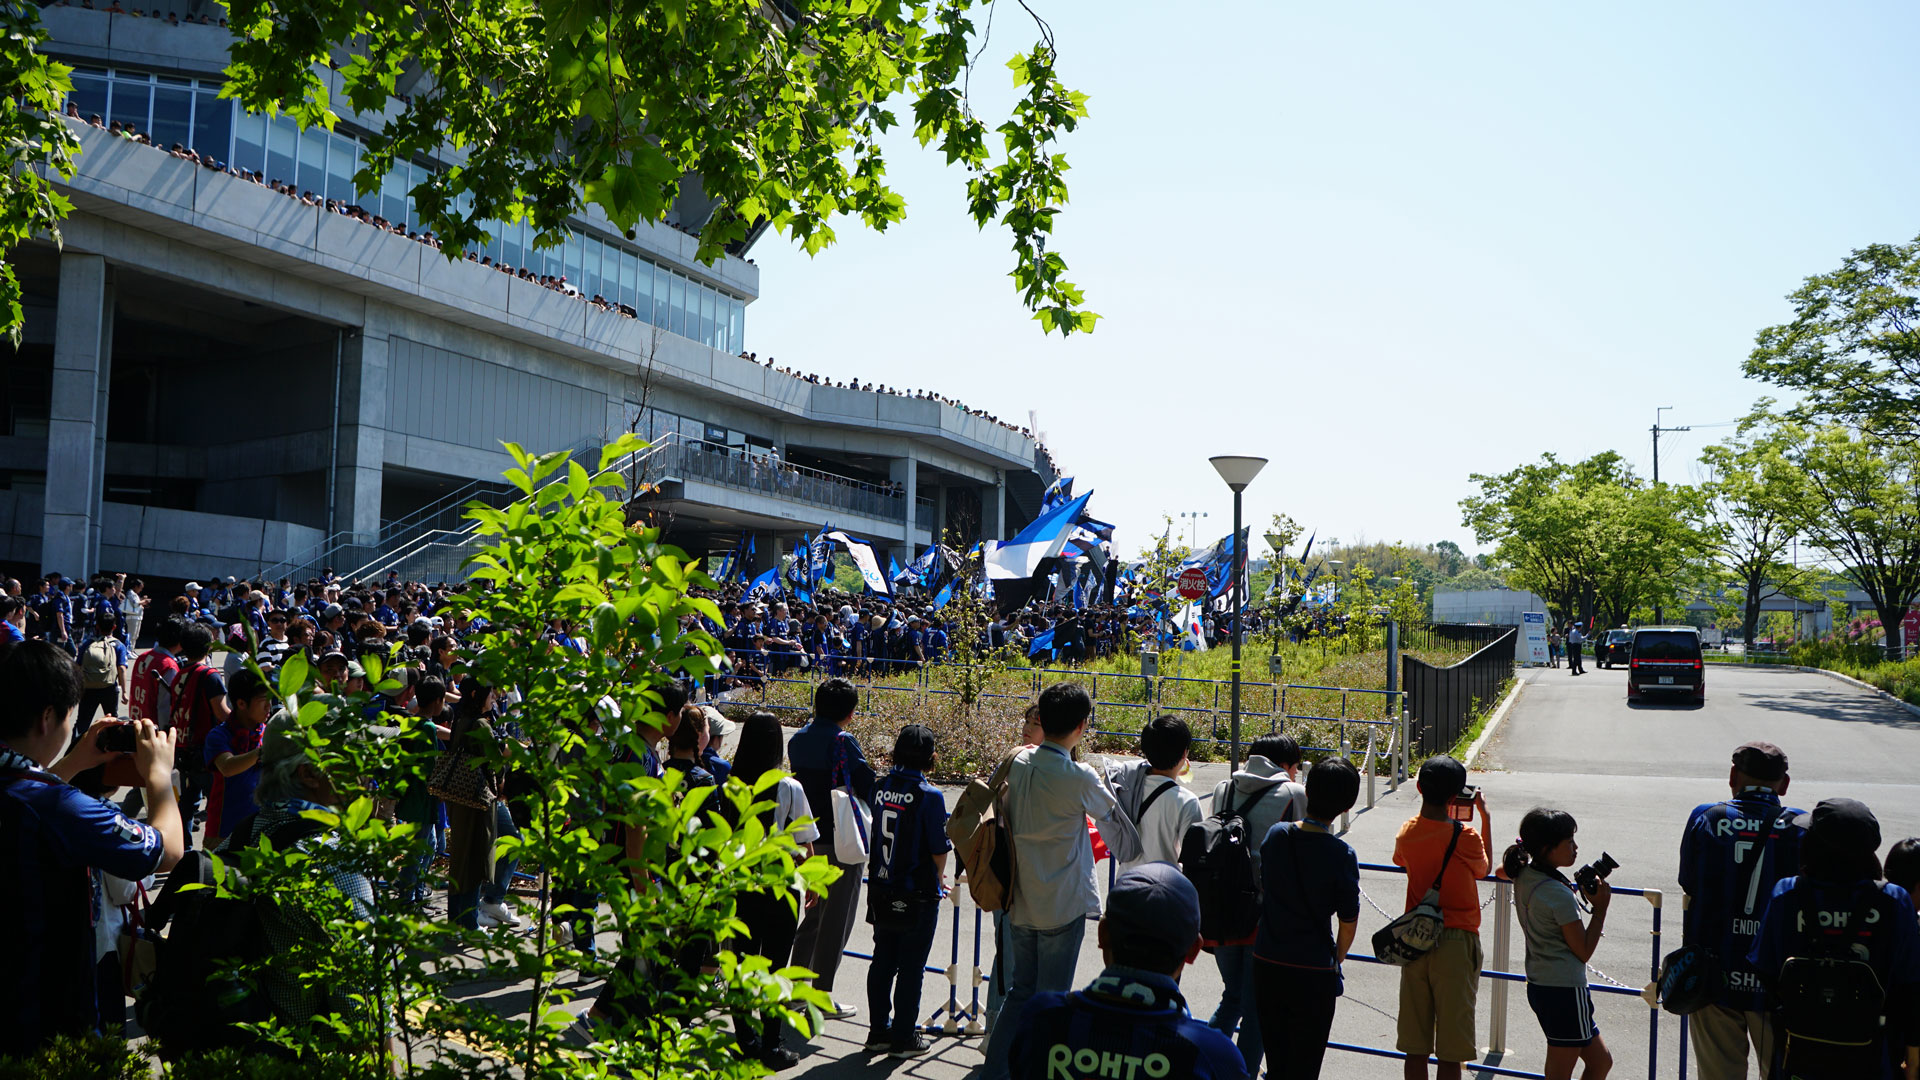 Chant of Gamba Osaka Supporter